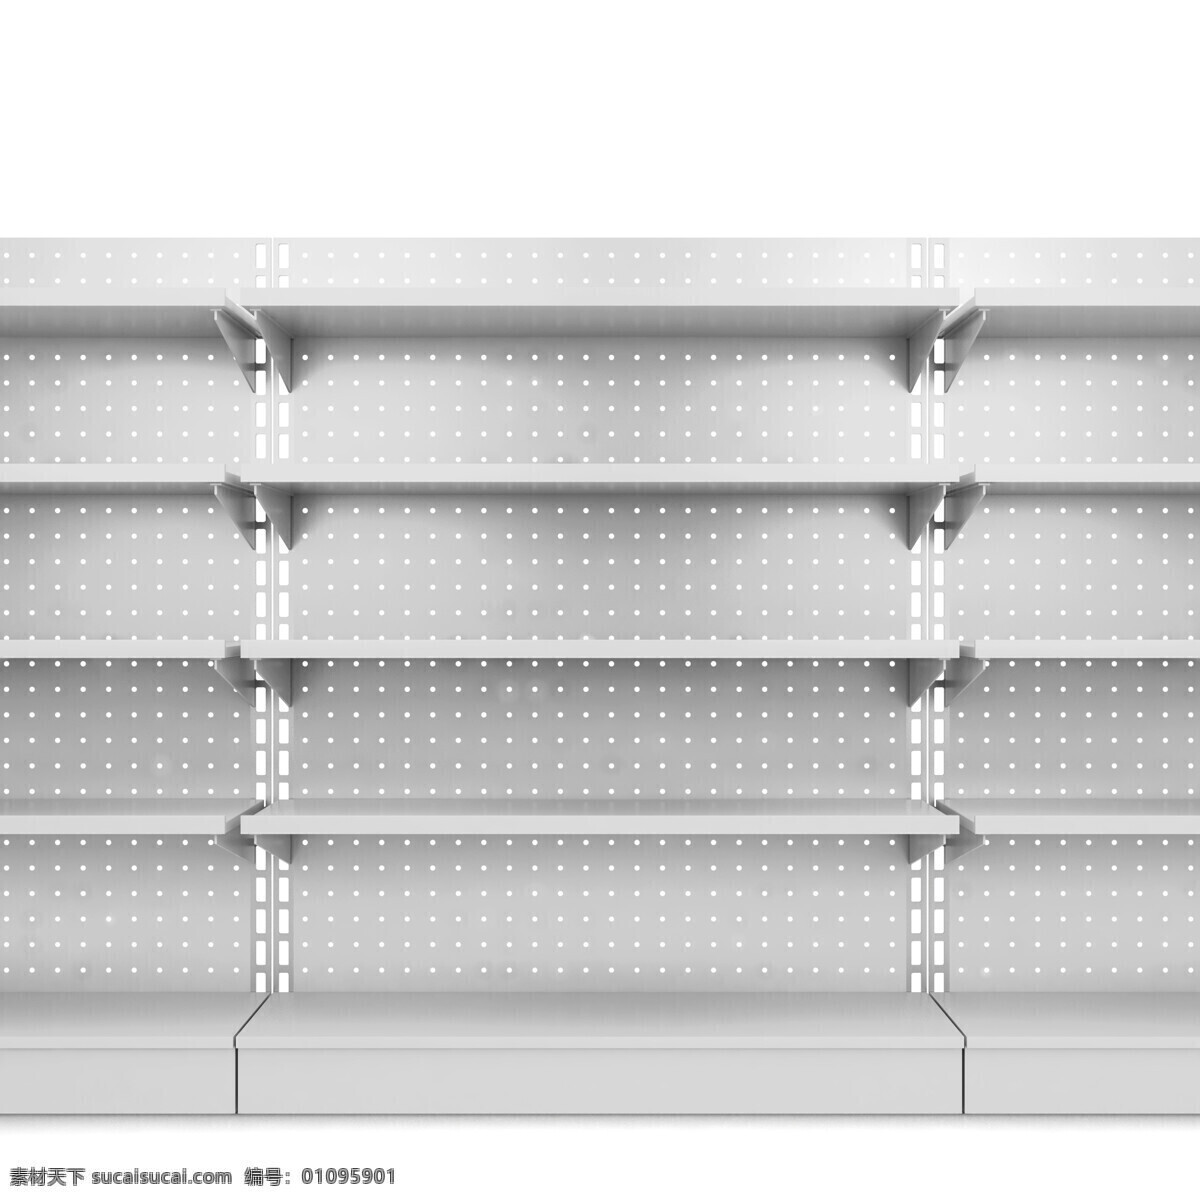 展示架 货架 货架设计 产品架 展示设计 展示柜 展示模型 展示柜设计 超市货架 3d模型类 3d设计 其他模型